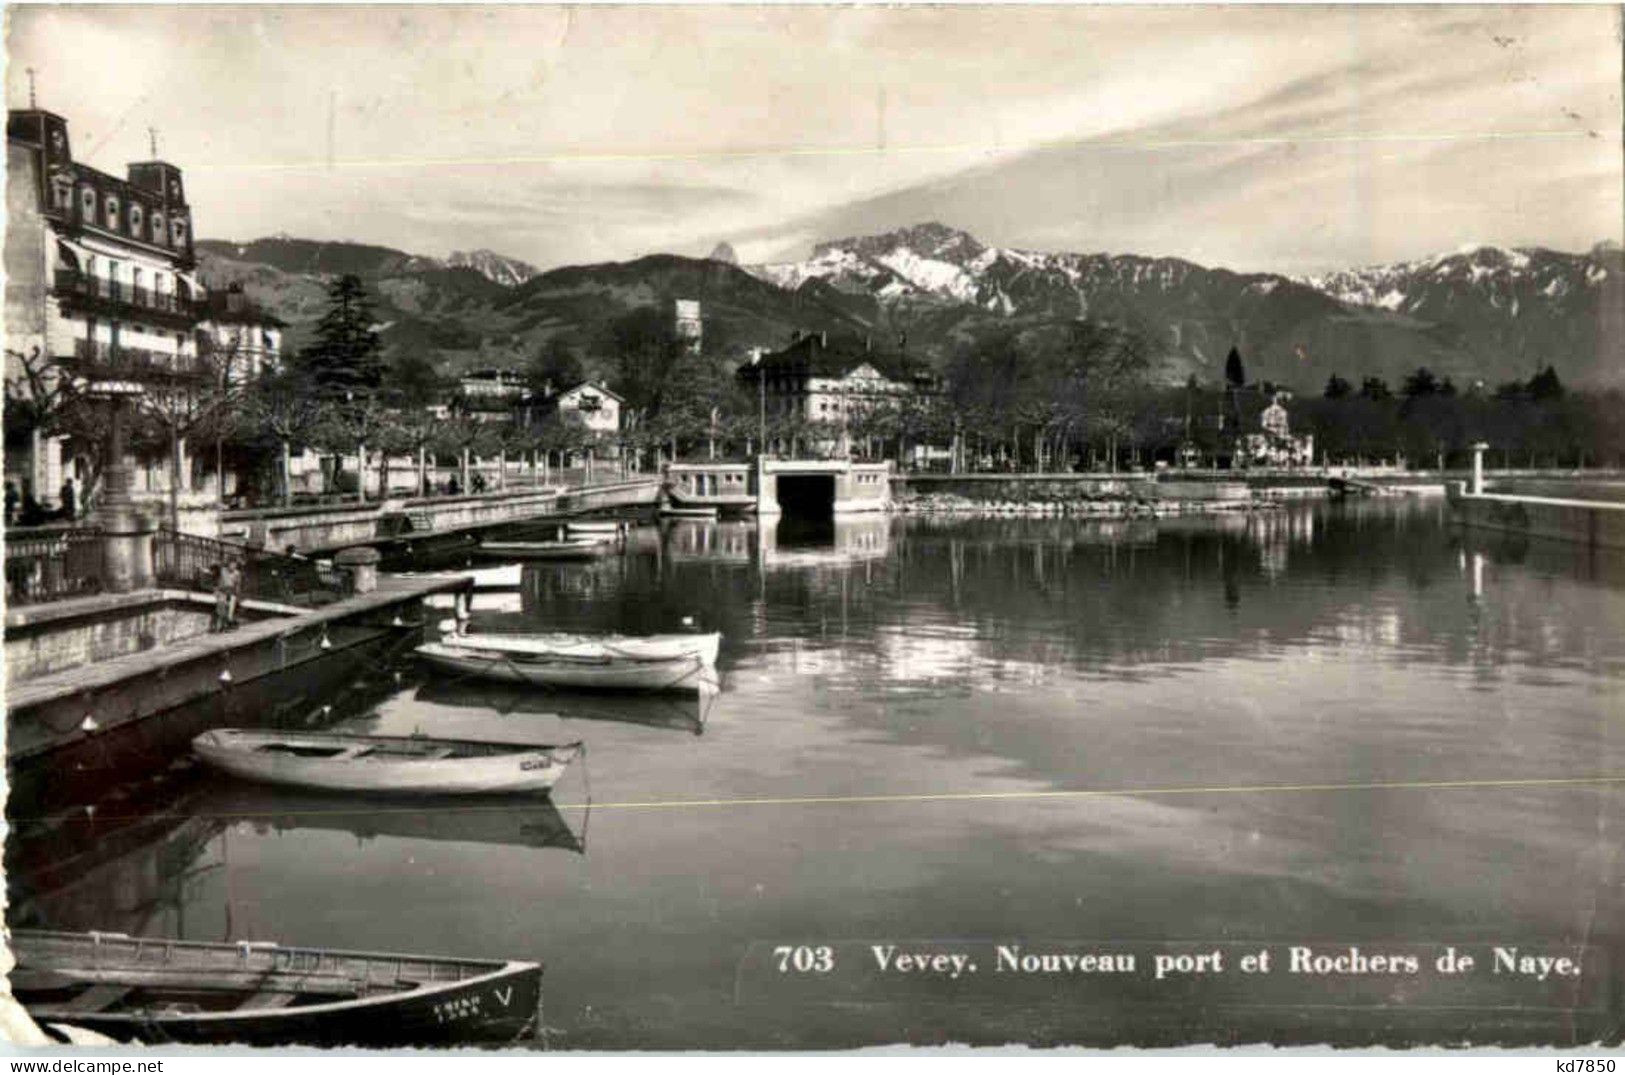 Vevey - Noveau Port - Vevey